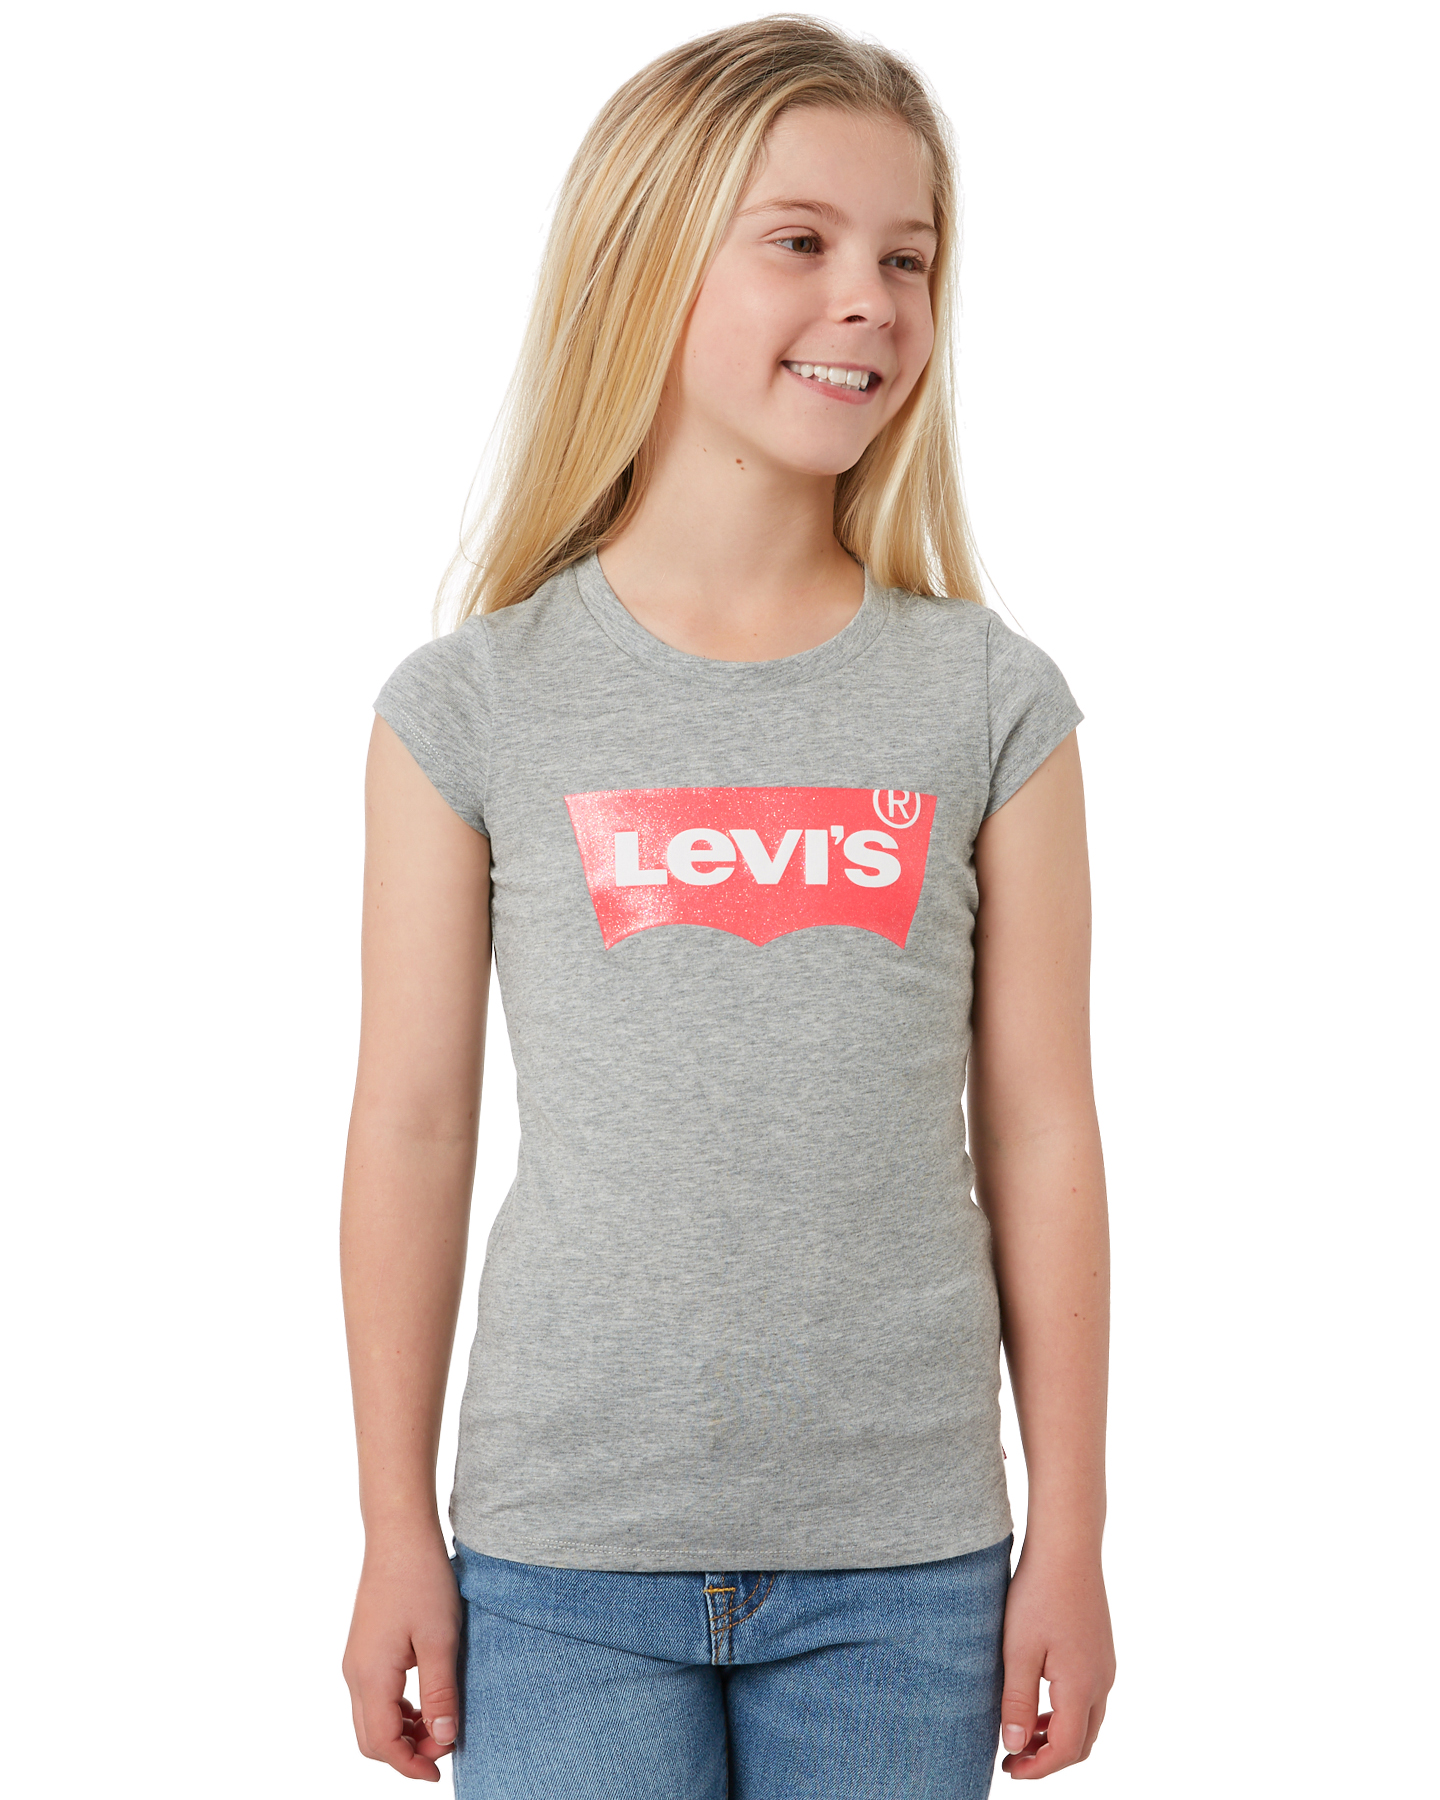 levis tops girls